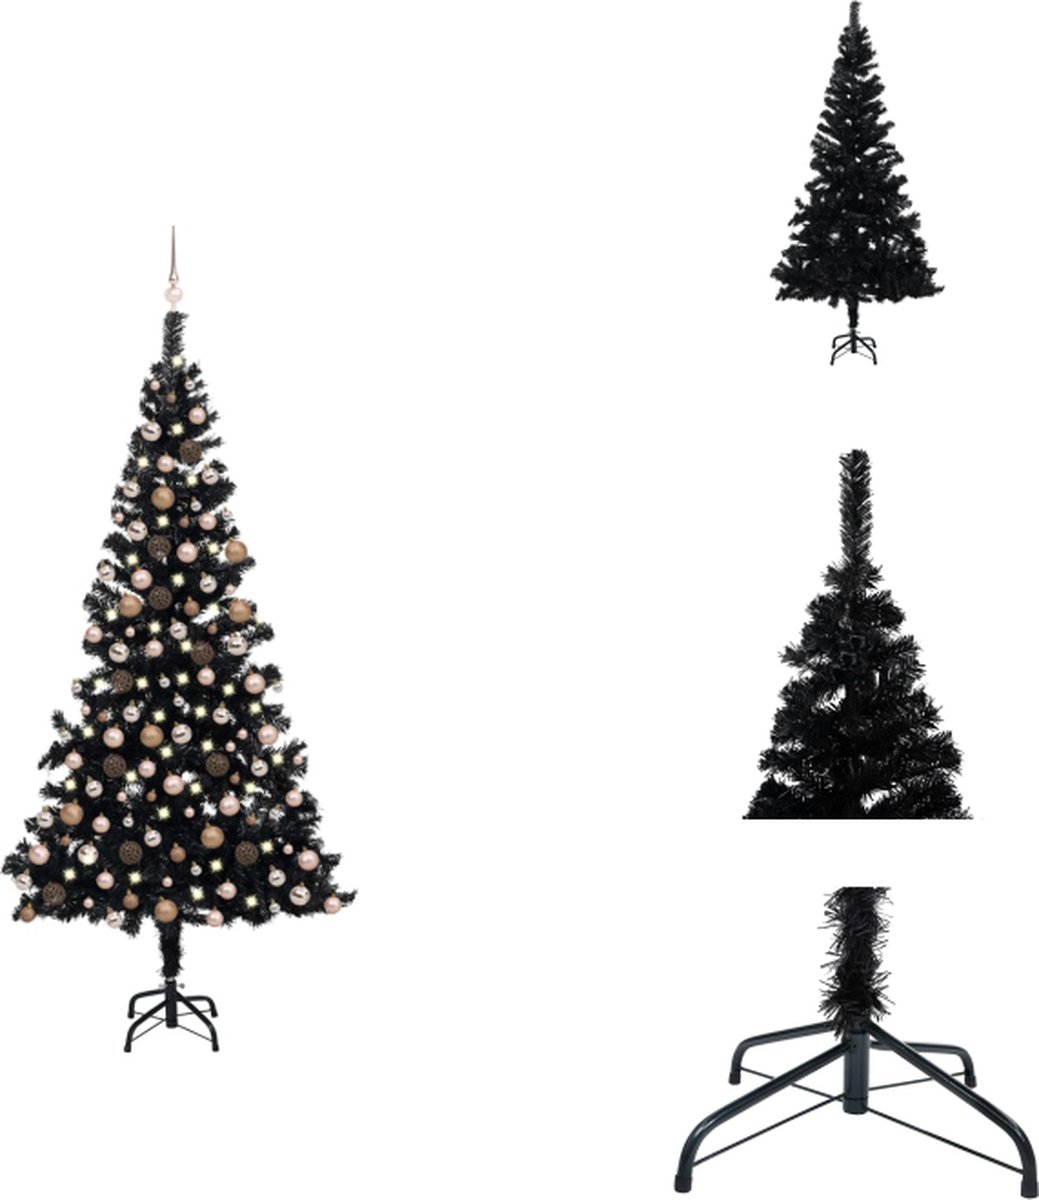 vidaXL Kunstkerstboom - Kerstboom - Kerstversiering - 240 cm - Kleur- Zwart - Materiaal- PVC - Hoogte- 240 cm - Diameter- 120 cm - LED-verlichting - Kerstballen - USB-aansluiting - Montage vereist - vidaXL - Decoratieve kerstboom